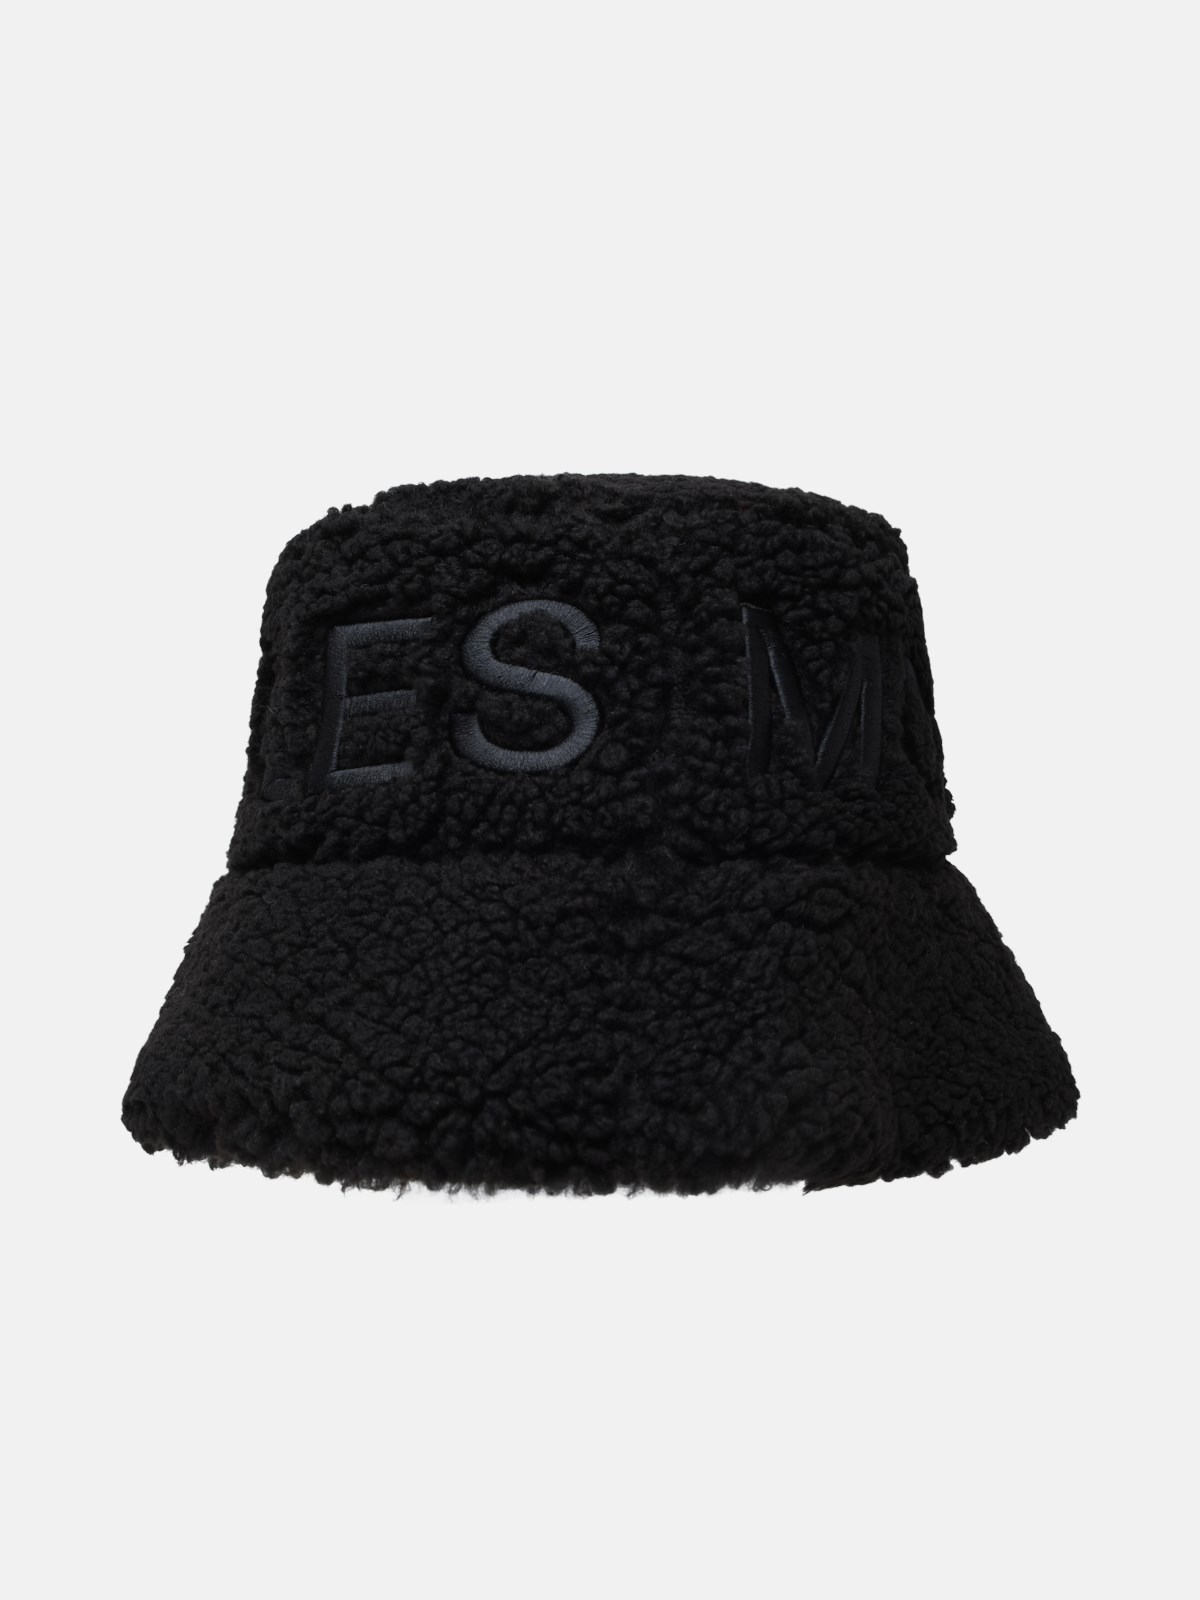 Moose Knuckles Black Polyestre Turtleneck Hat